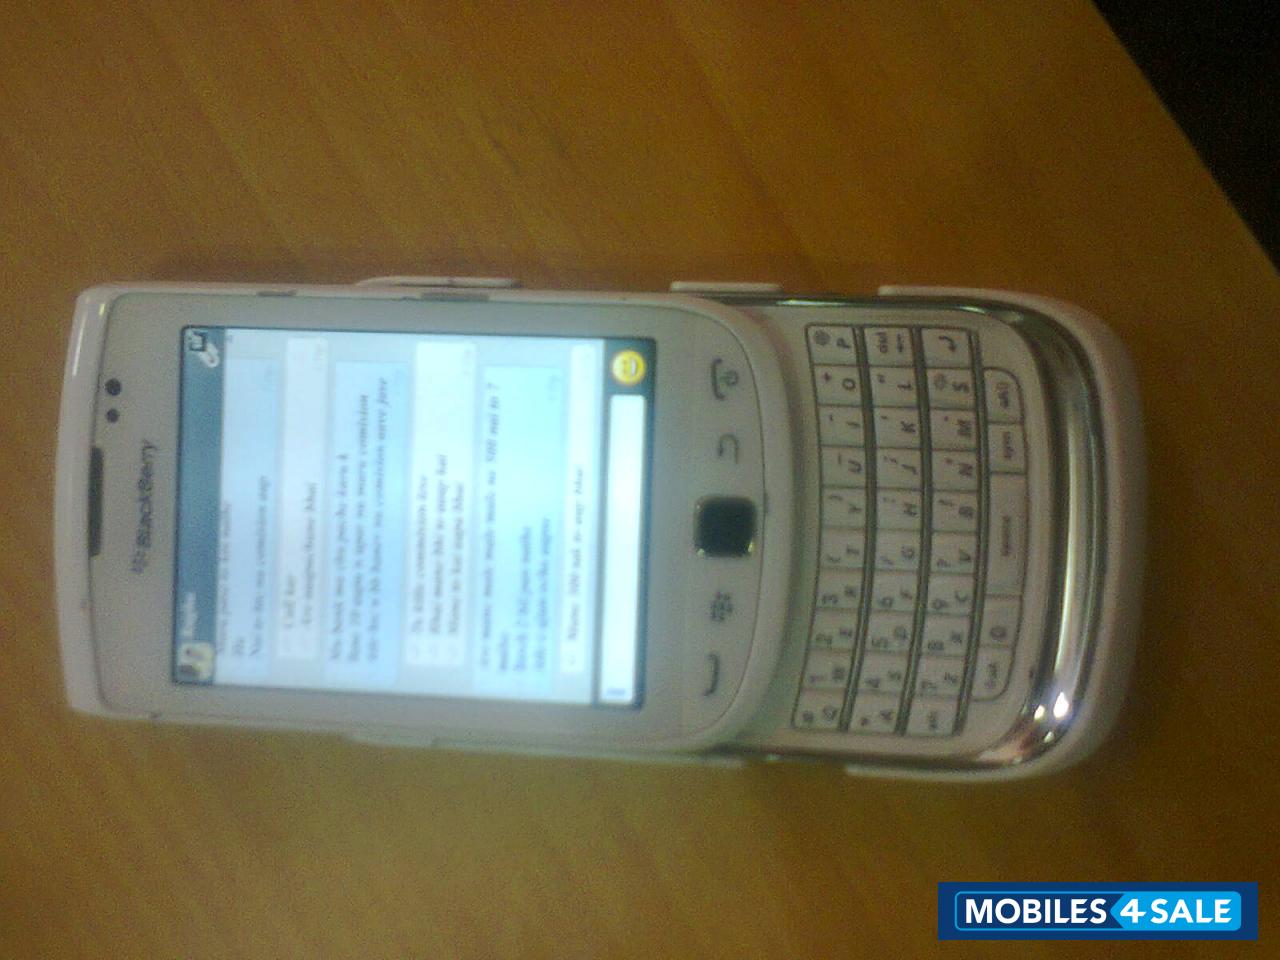 White BlackBerry Torch 9810